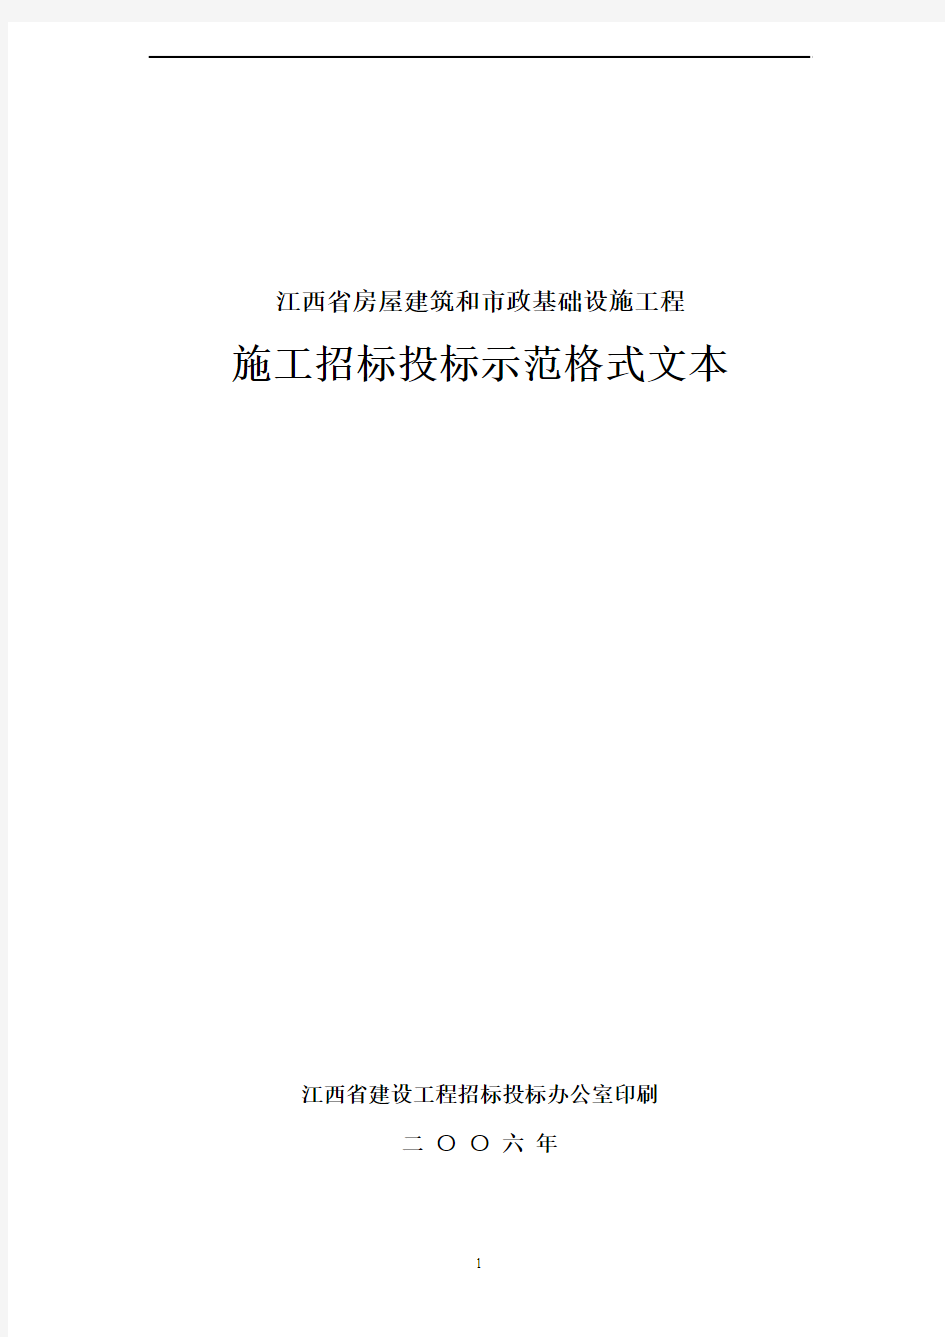 施工招标投标示范格式文本——江西省房屋建筑和市政基础设施工程